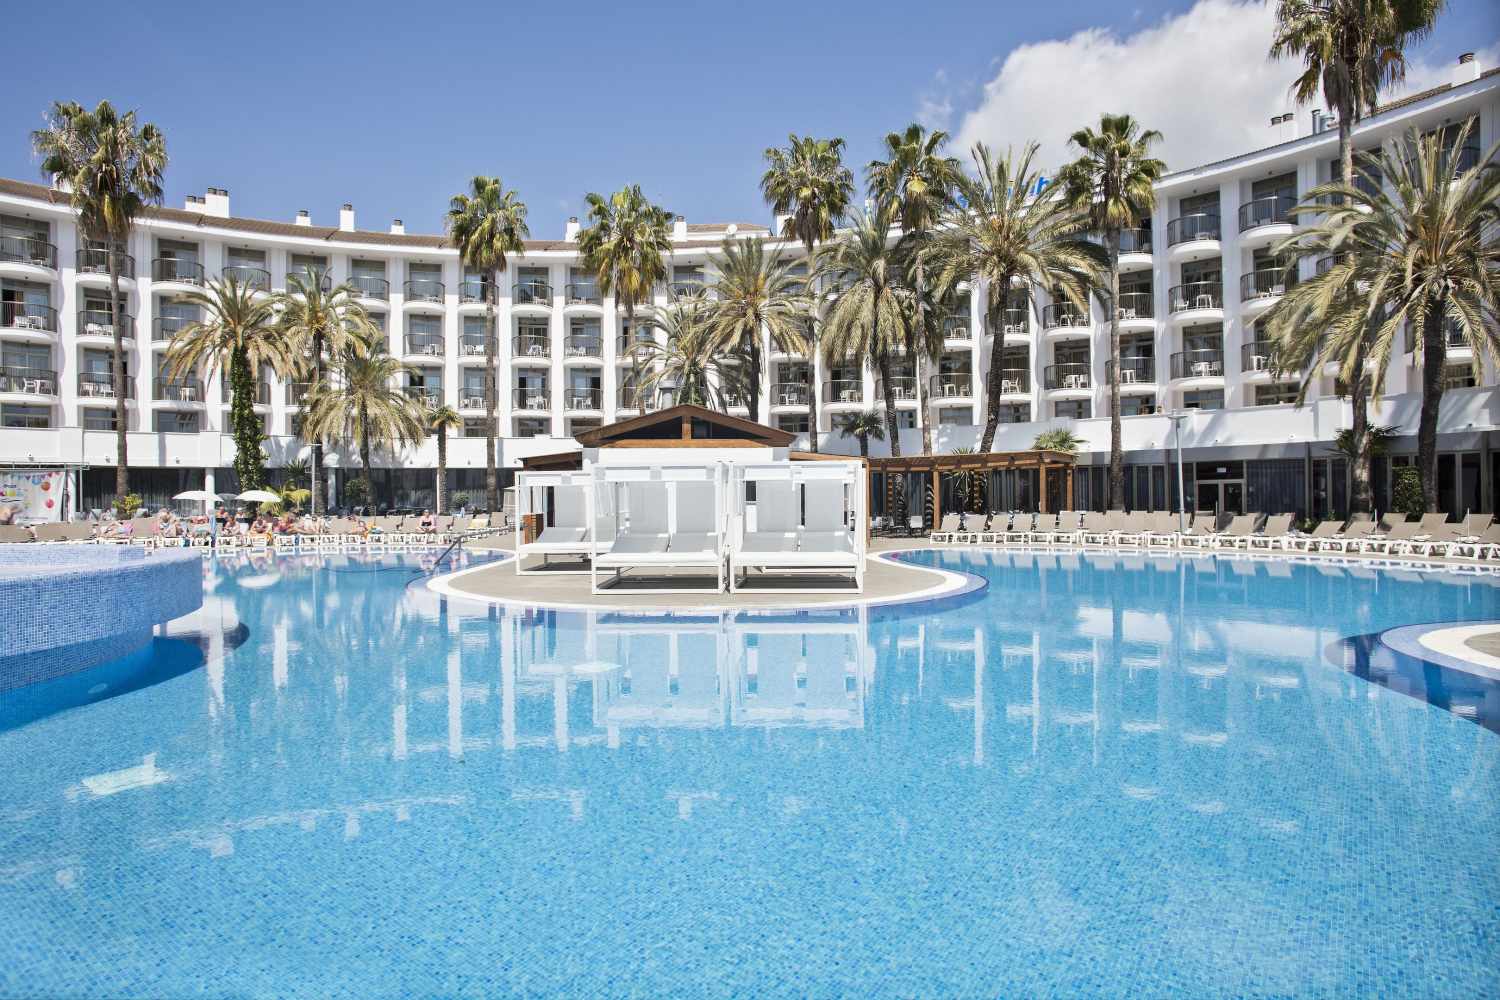 Hotel Best Cambrils, Cambrils de Mar, Costa Dorada, Spanje